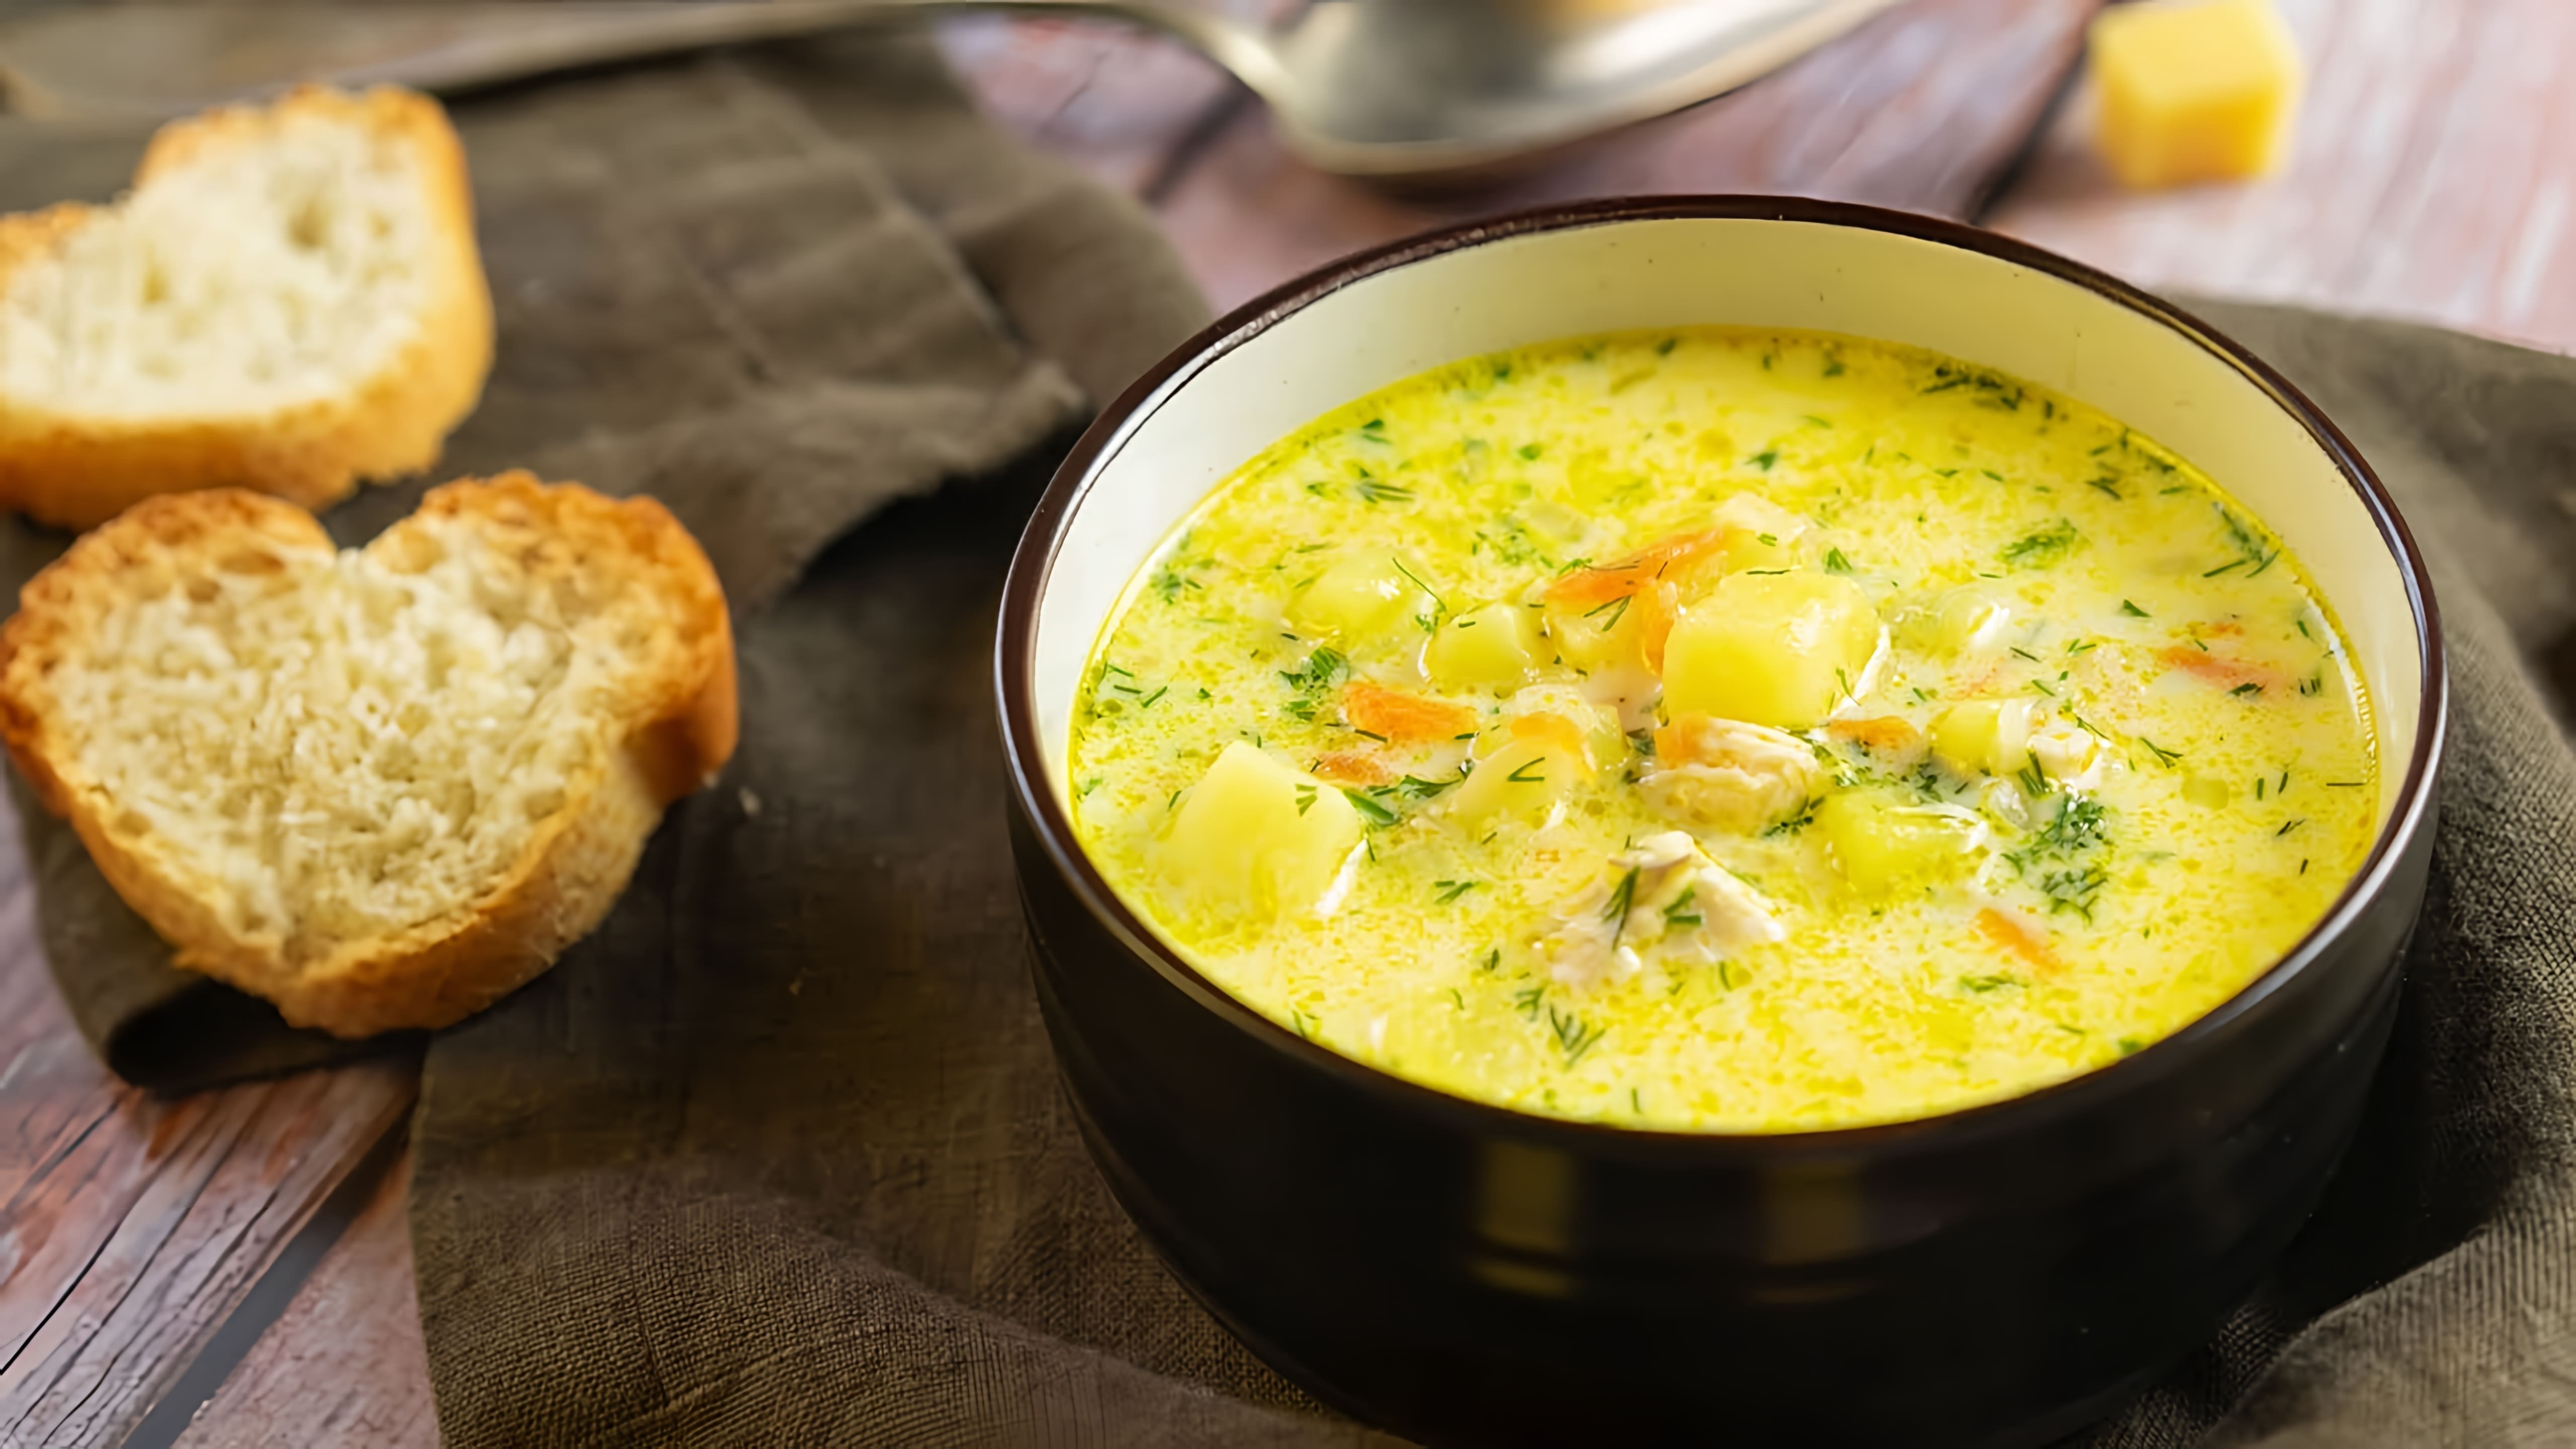 В этом видео-ролике будет показан рецепт приготовления сырного супа, который можно легко приготовить в домашних условиях